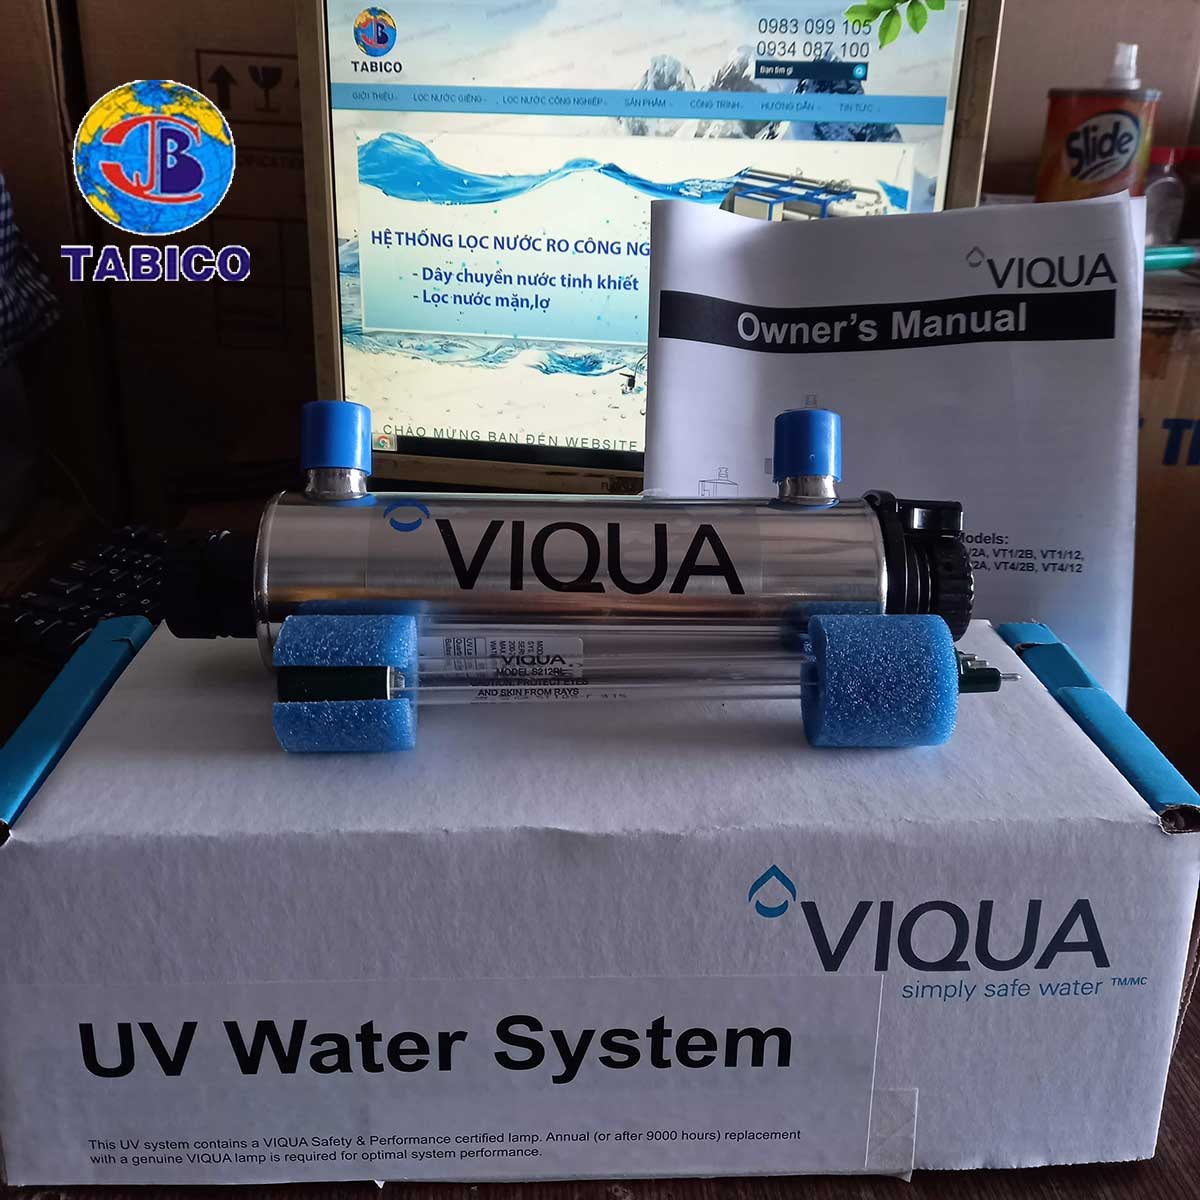 Den UV diet khuan VT1/2 Viqua